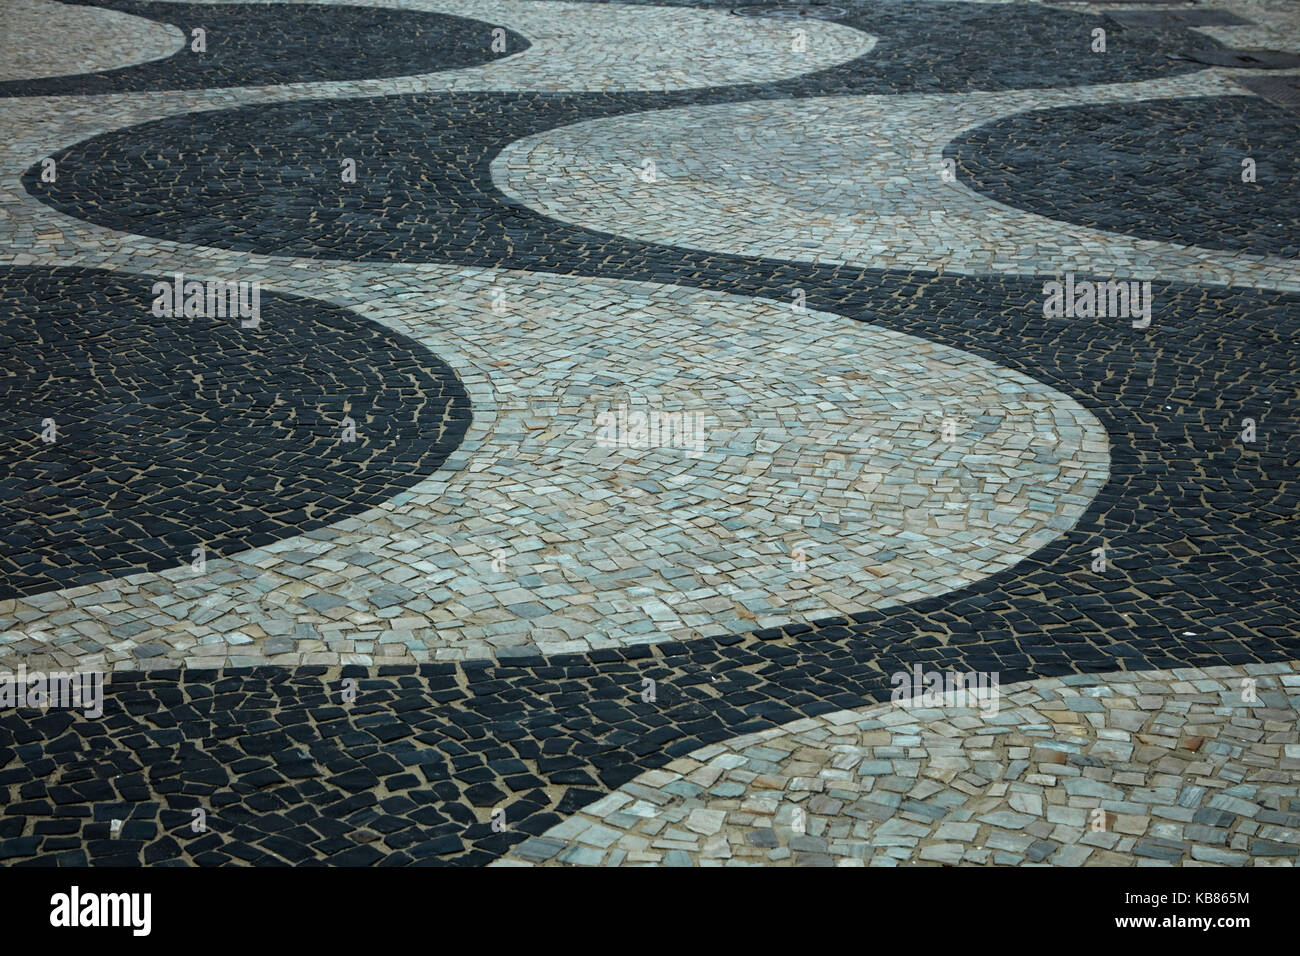 Modèle d'onde de la chaussée portugaise qui s'étend sur 4km le long de la plage de Copacabana, Rio de Janeiro, Brésil, Amérique du Sud Banque D'Images